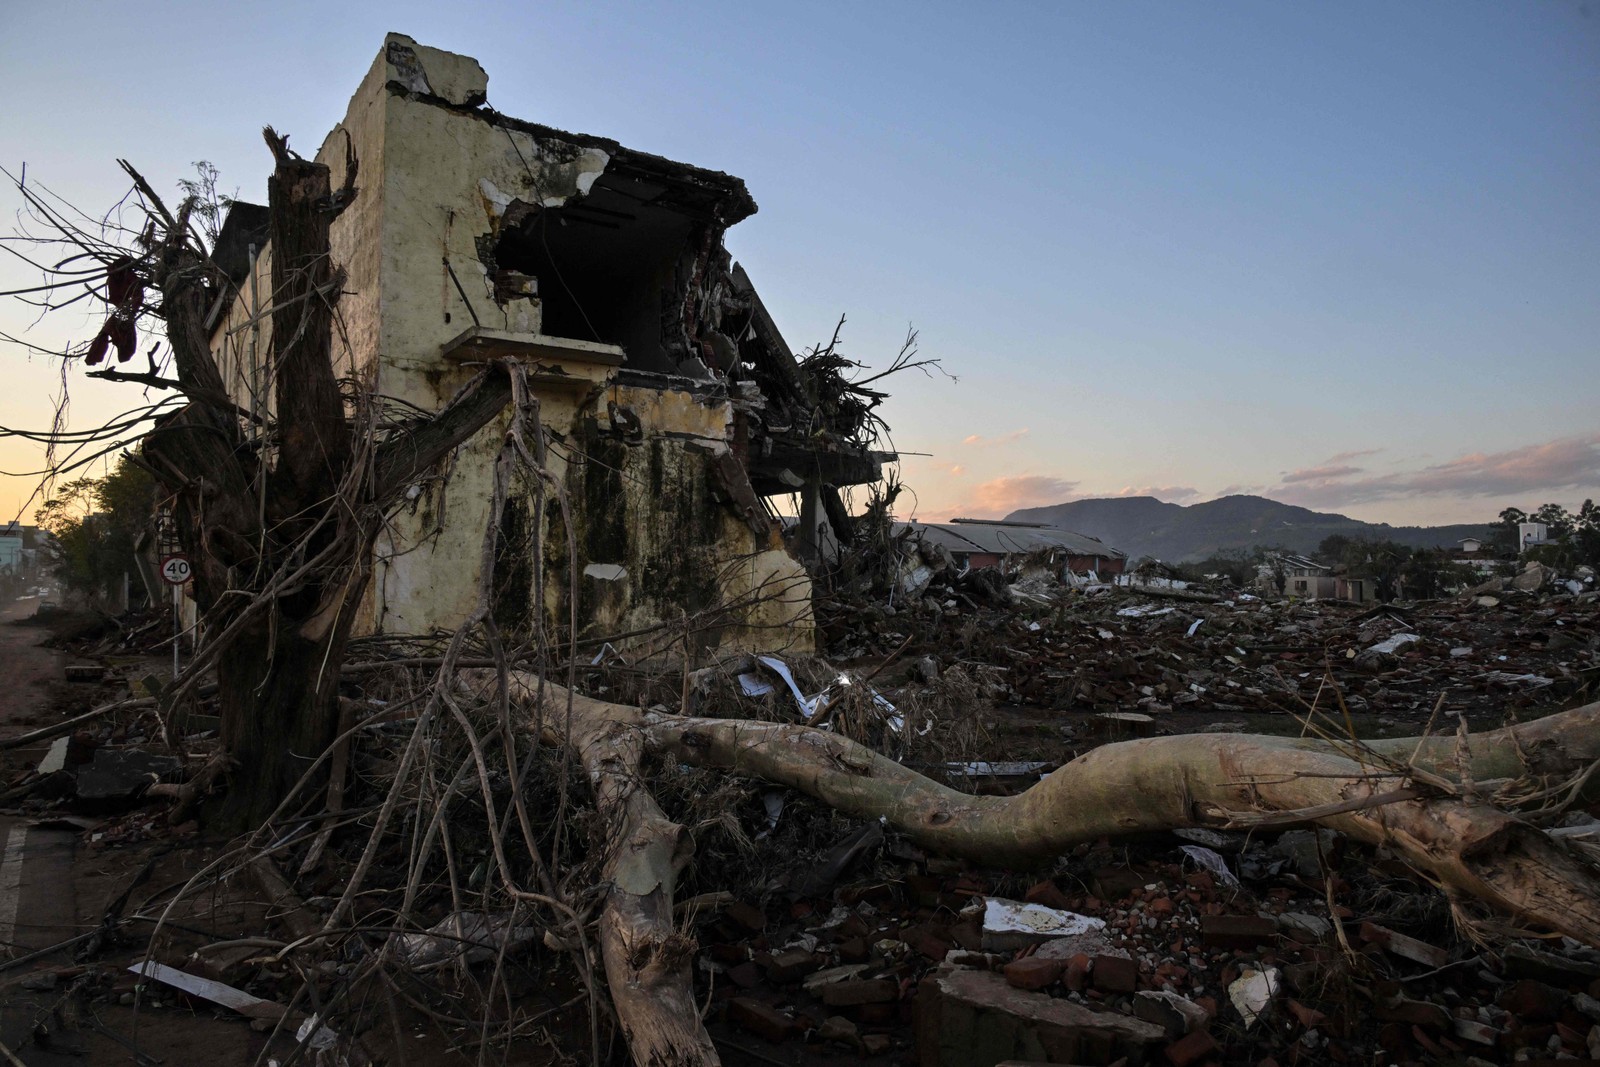 Vista de uma casa destruída após enchente em Arroio do Meio, Rio Grande do Sul — Foto: Nelson ALMEIDA / AFP